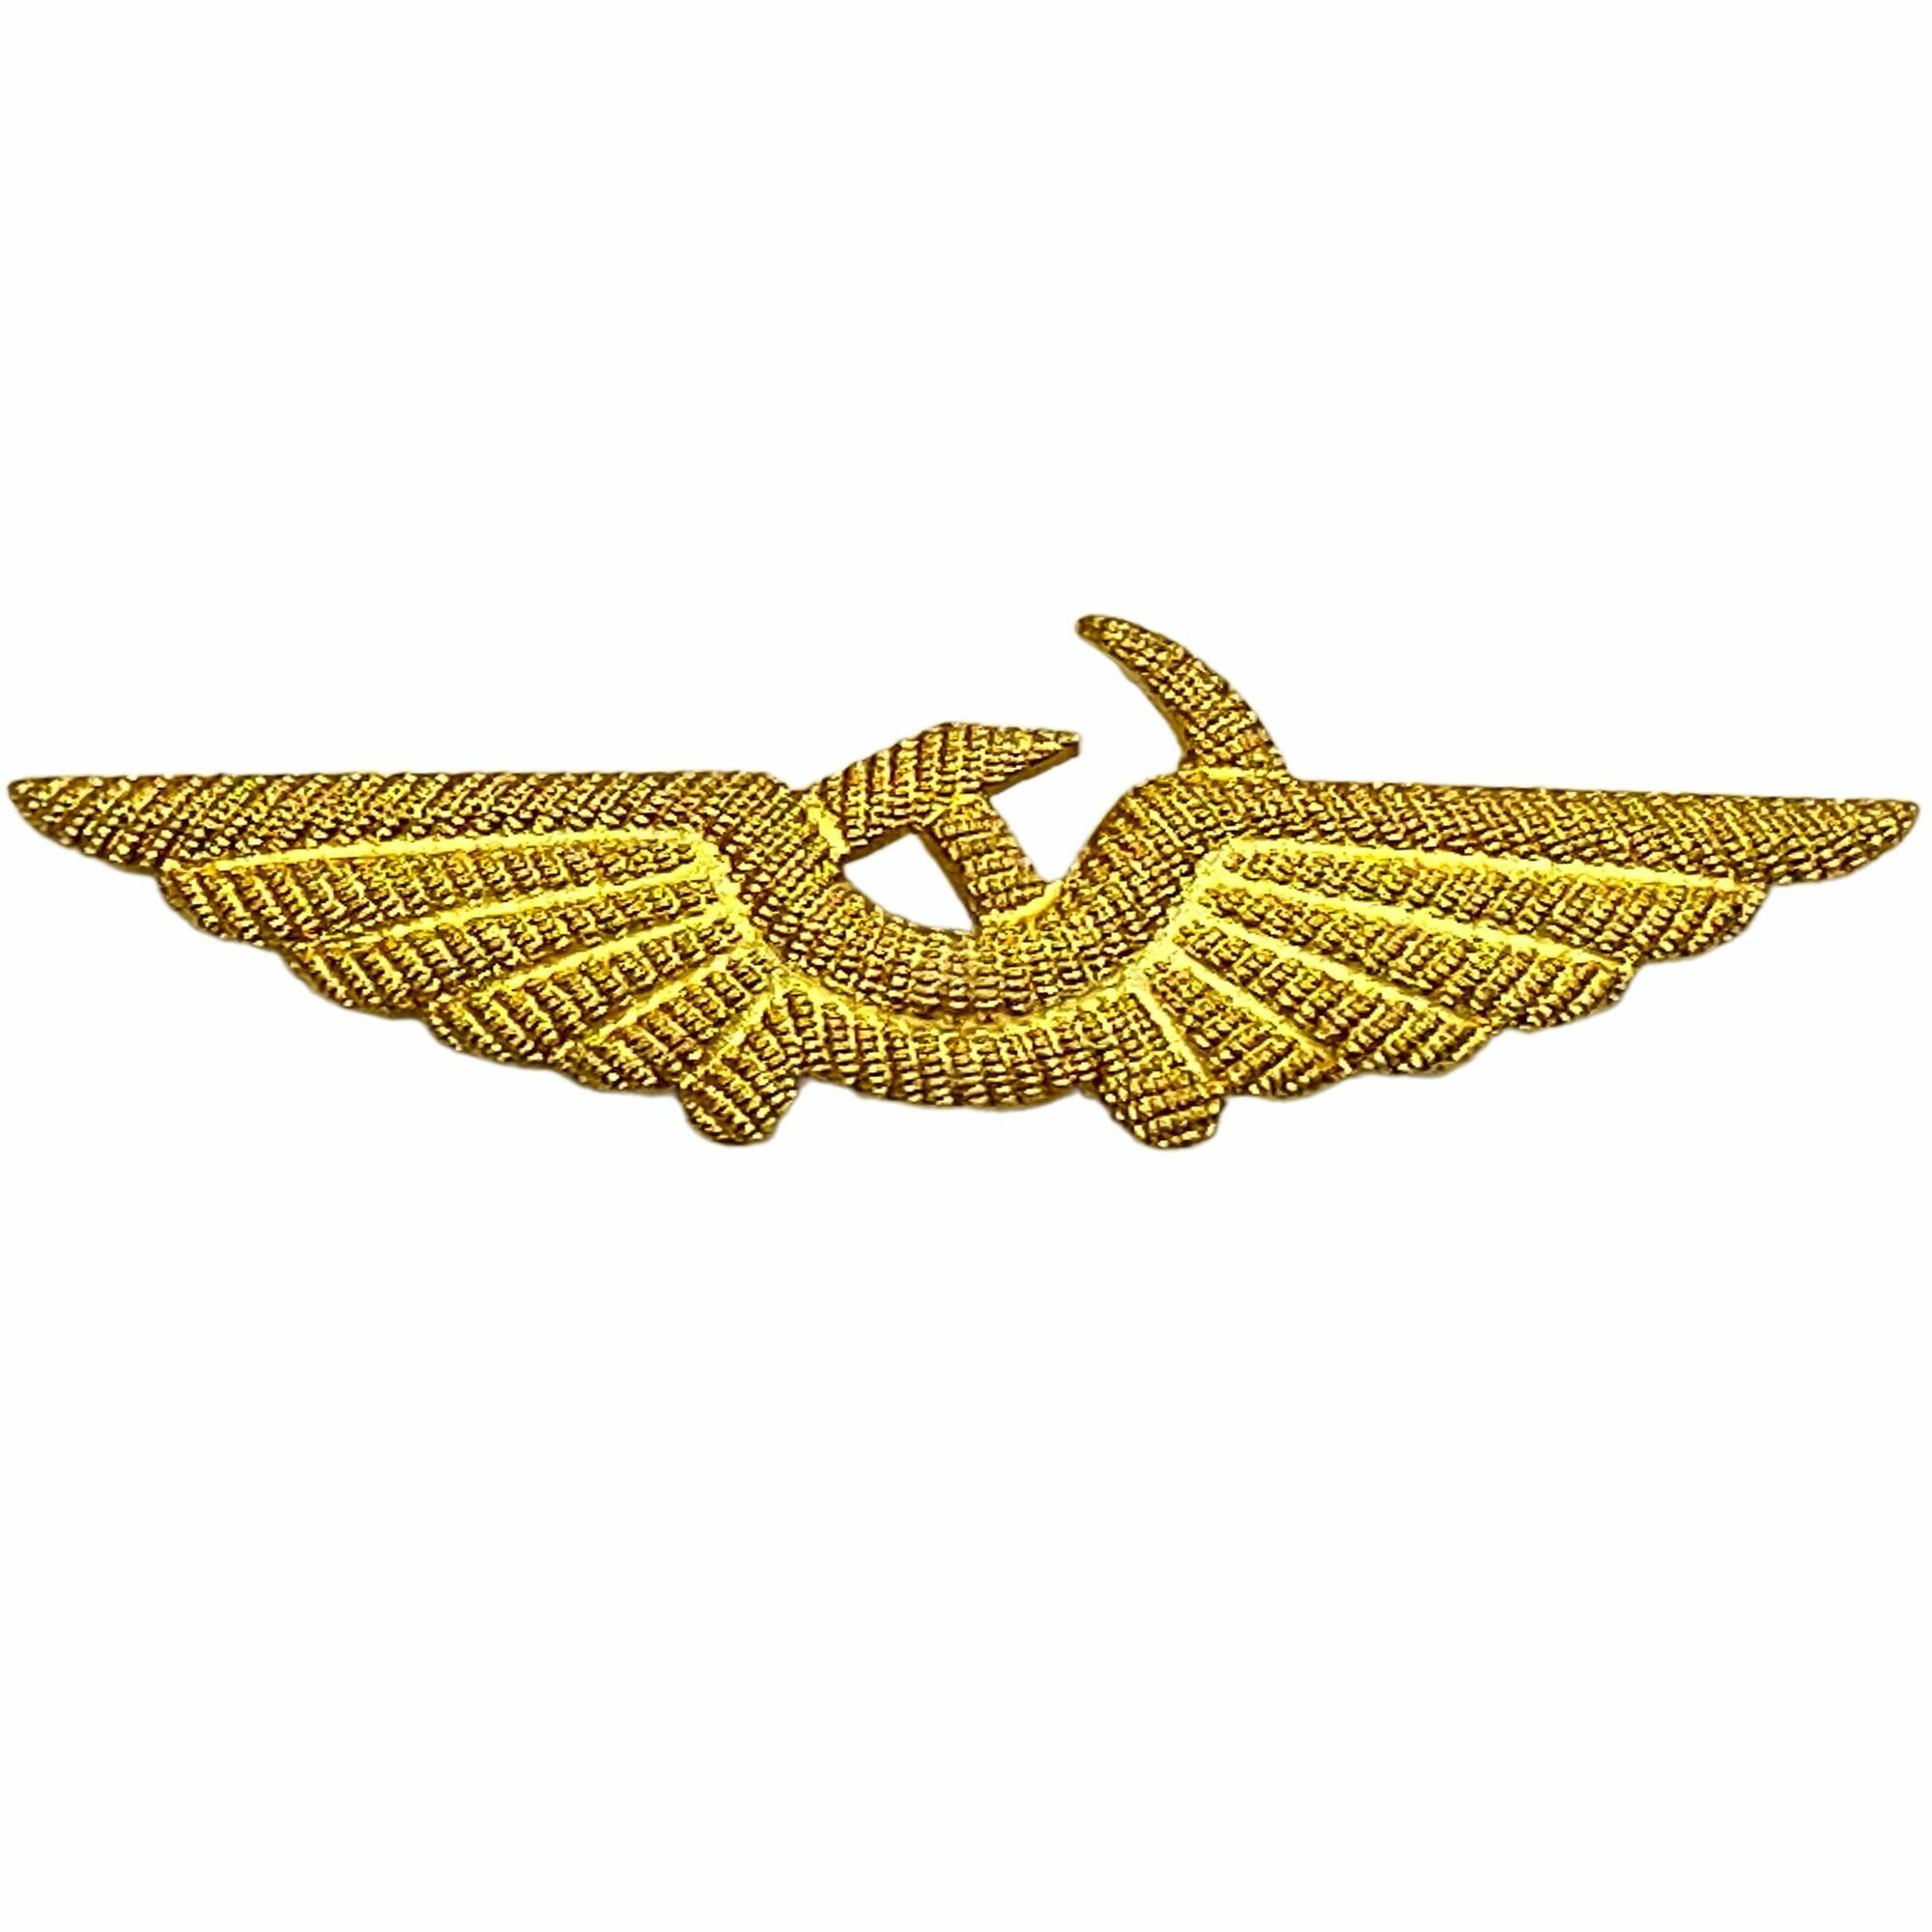 Кокарда (эмблема) на тулью фуражки пилота Гражданской авиации СССР